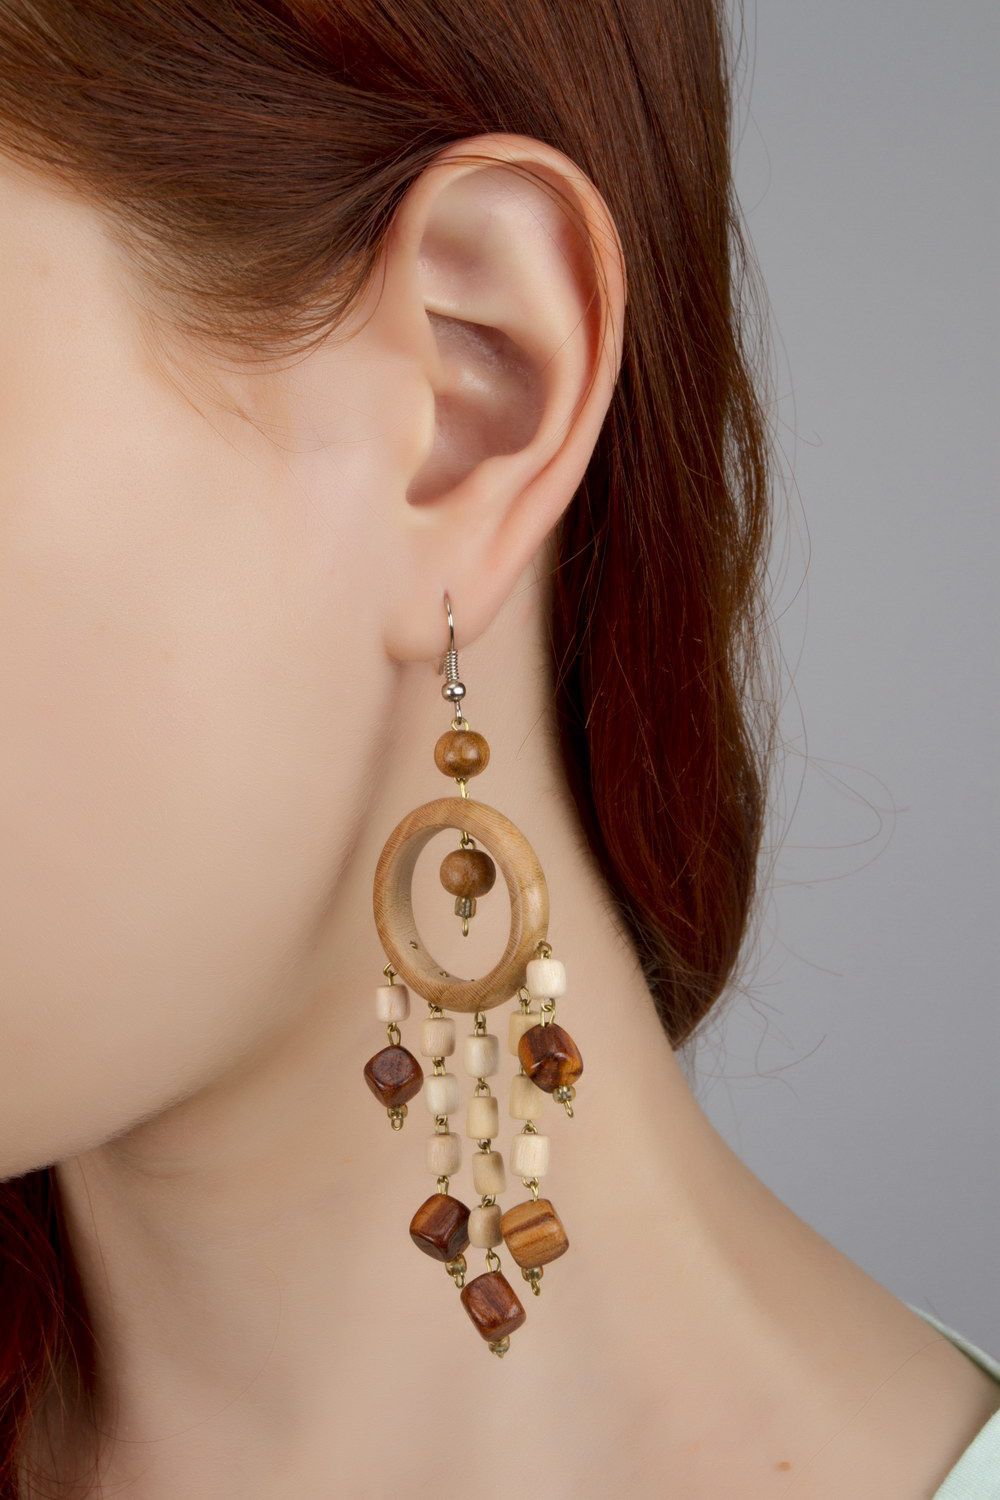 Long wooden earrings in ethnic style photo 4